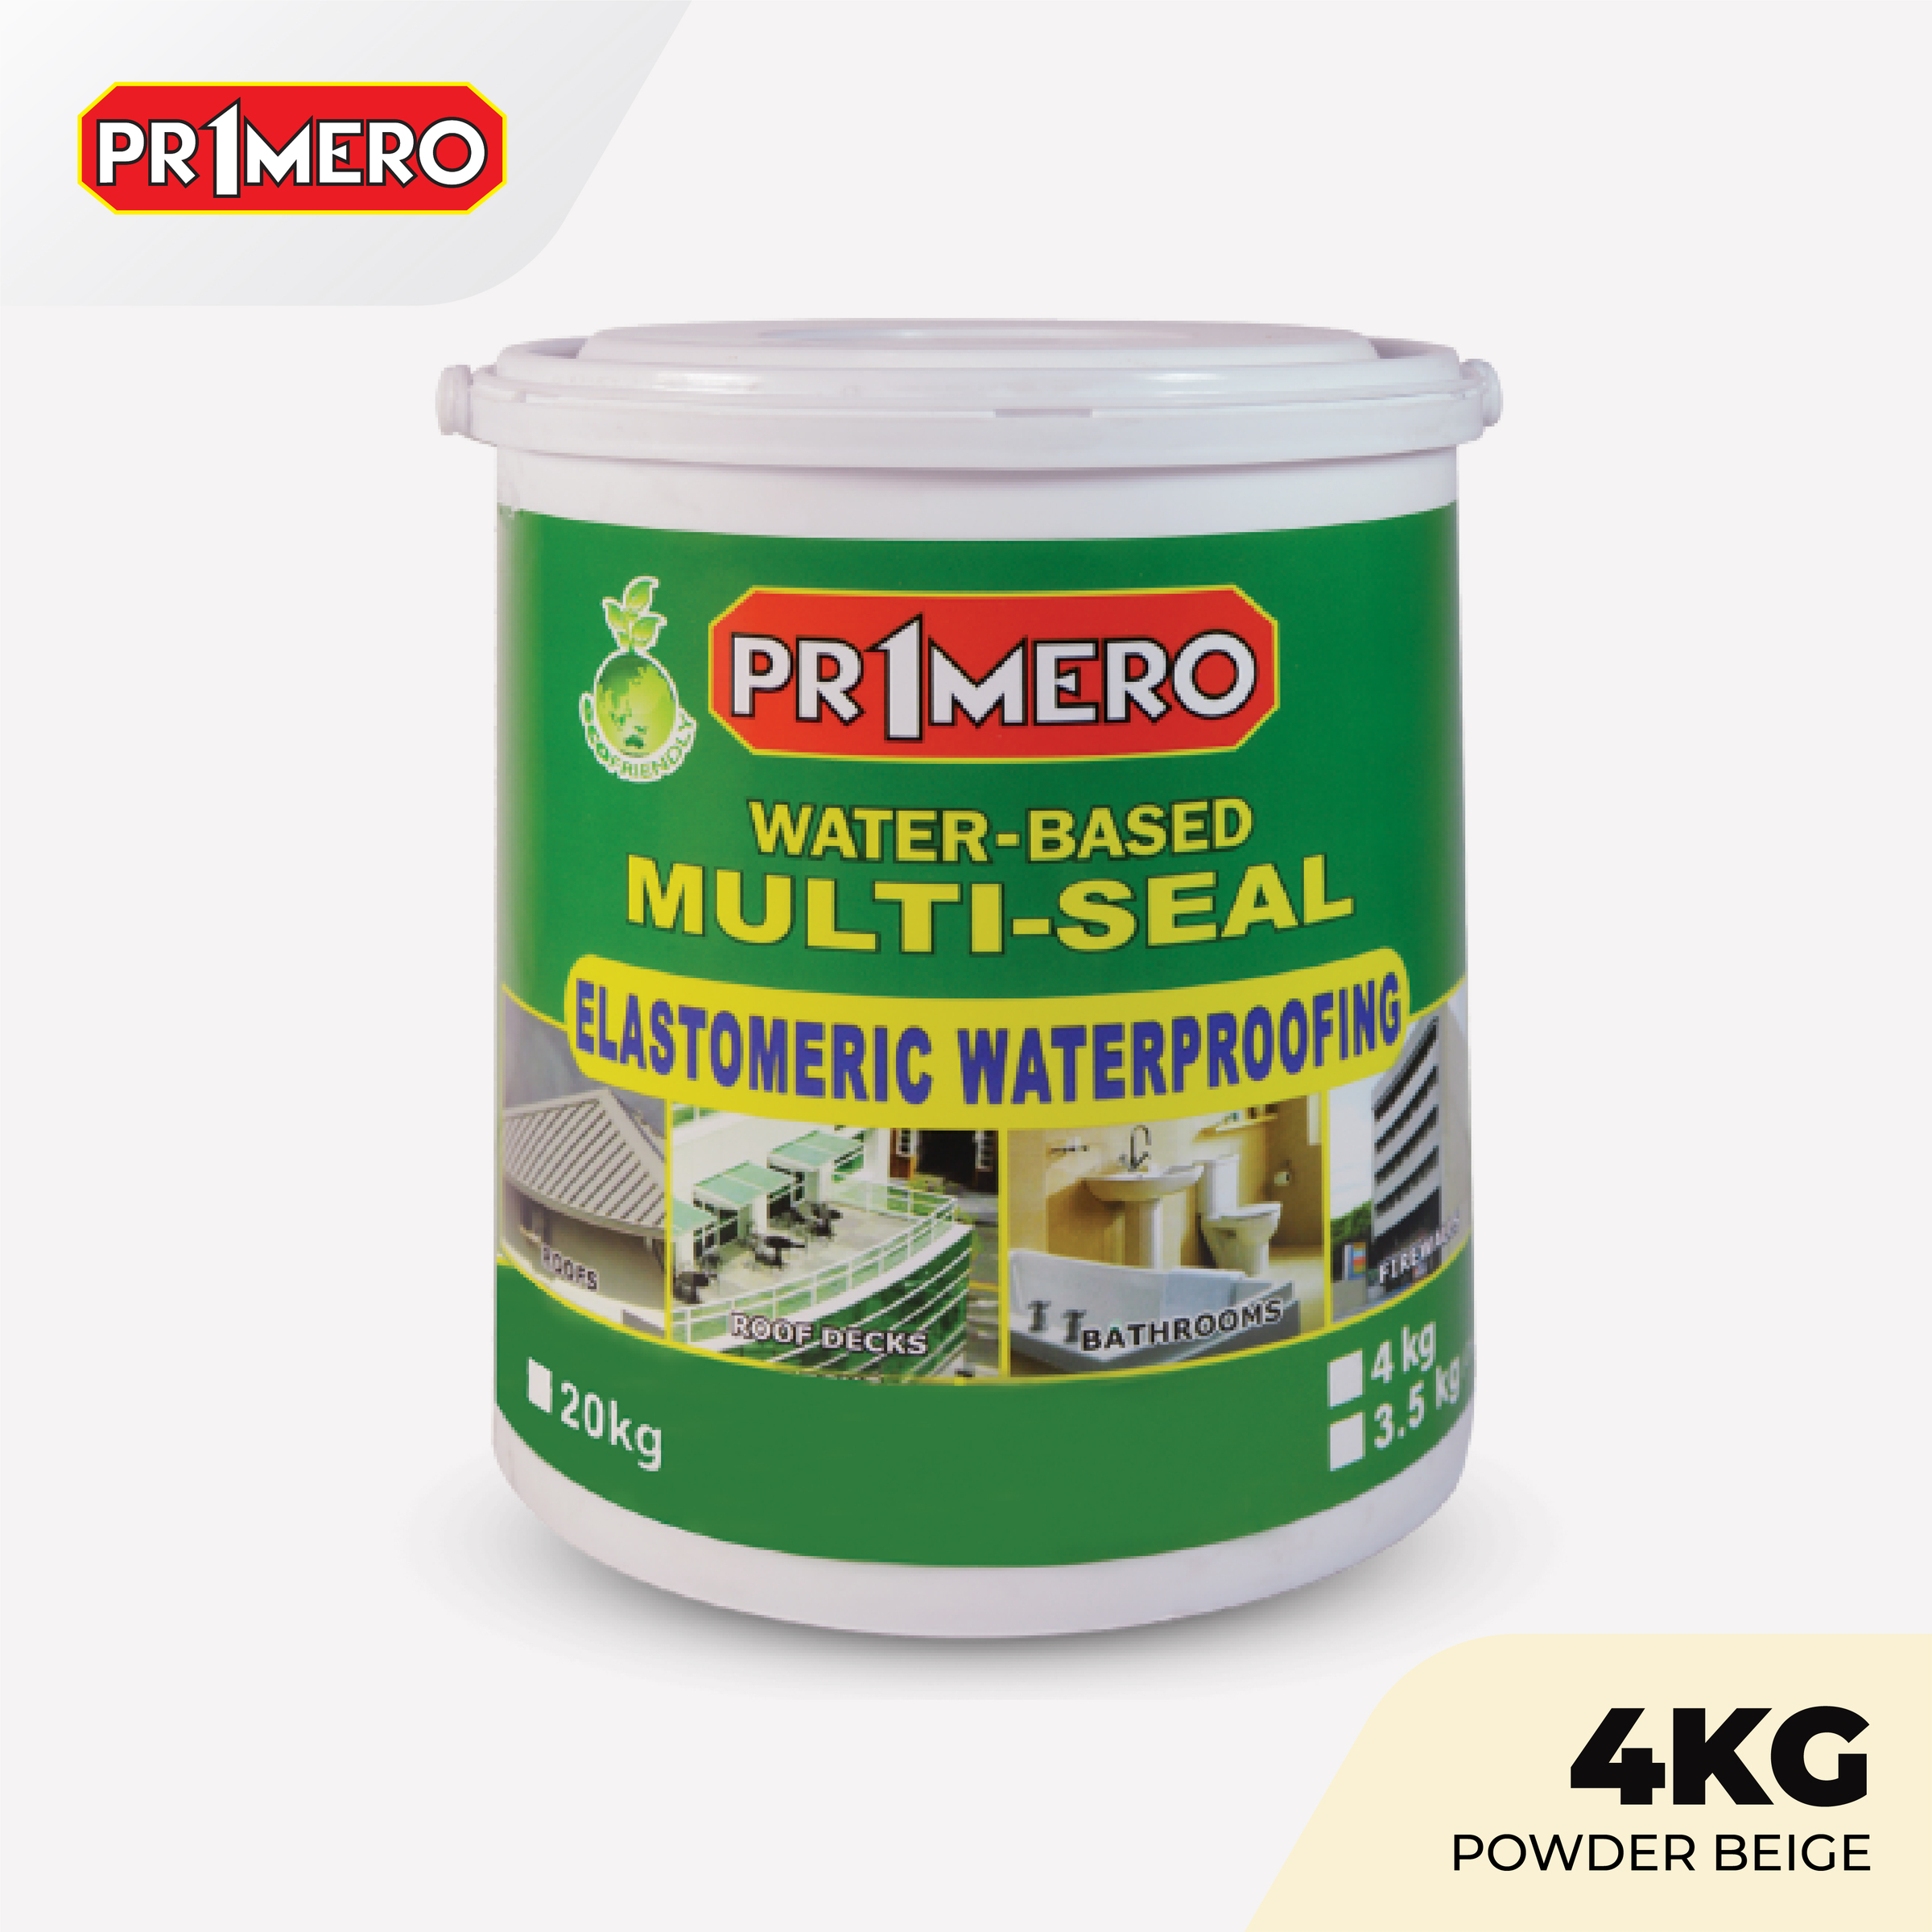 Primero Multi-Seal Elastomeric Waterproofing Sealant Powder Beige - 4Kg